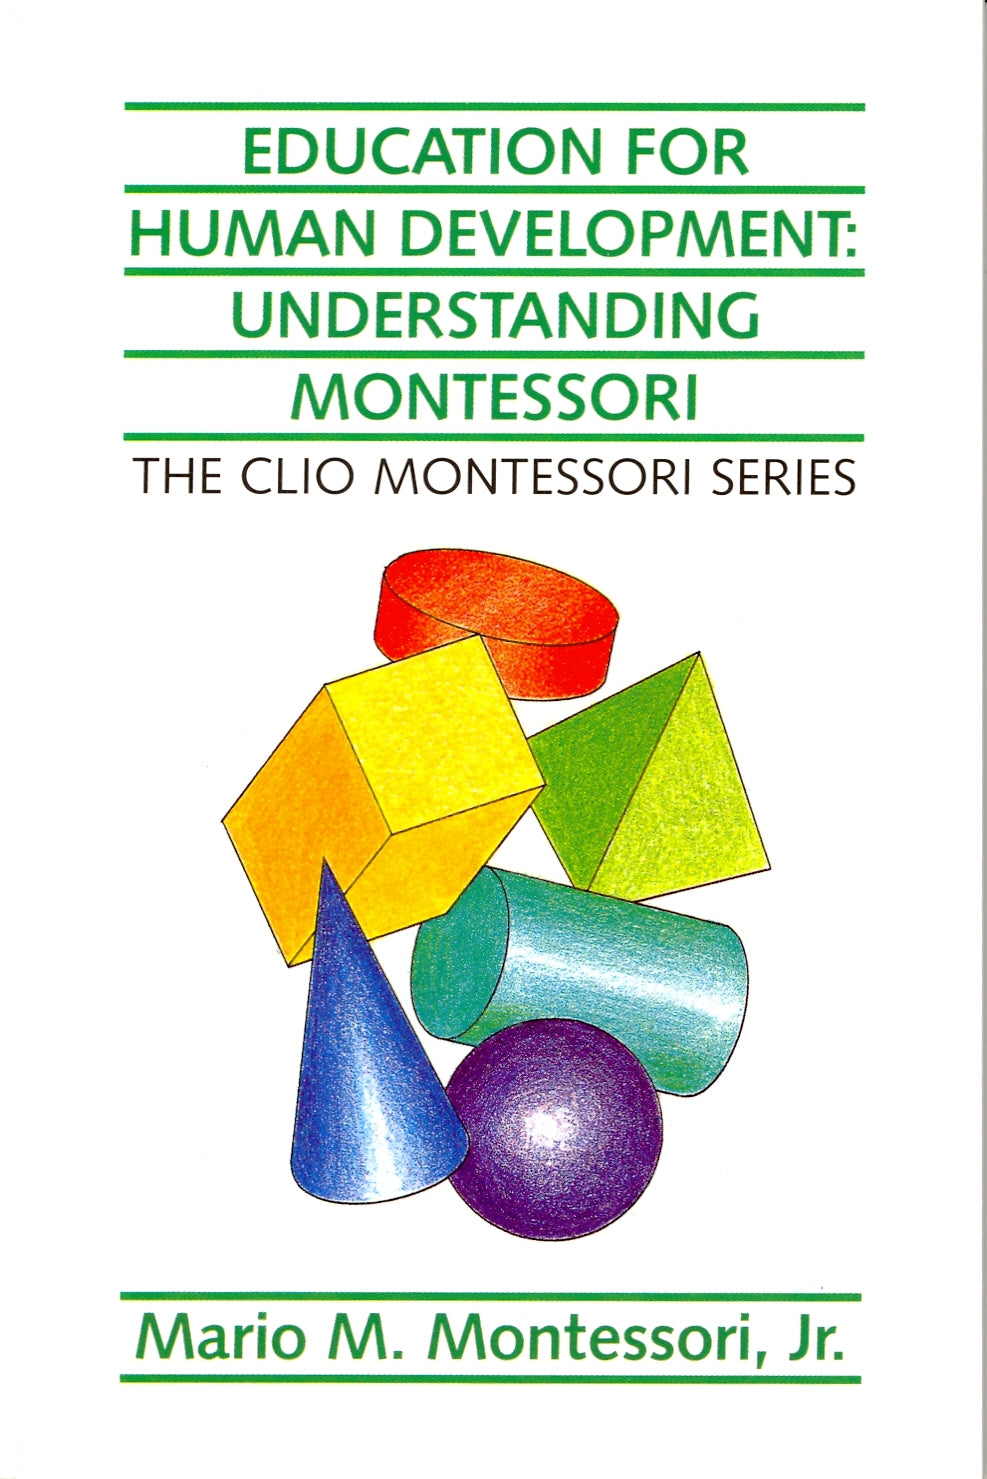 Who Was Mario Montessori?